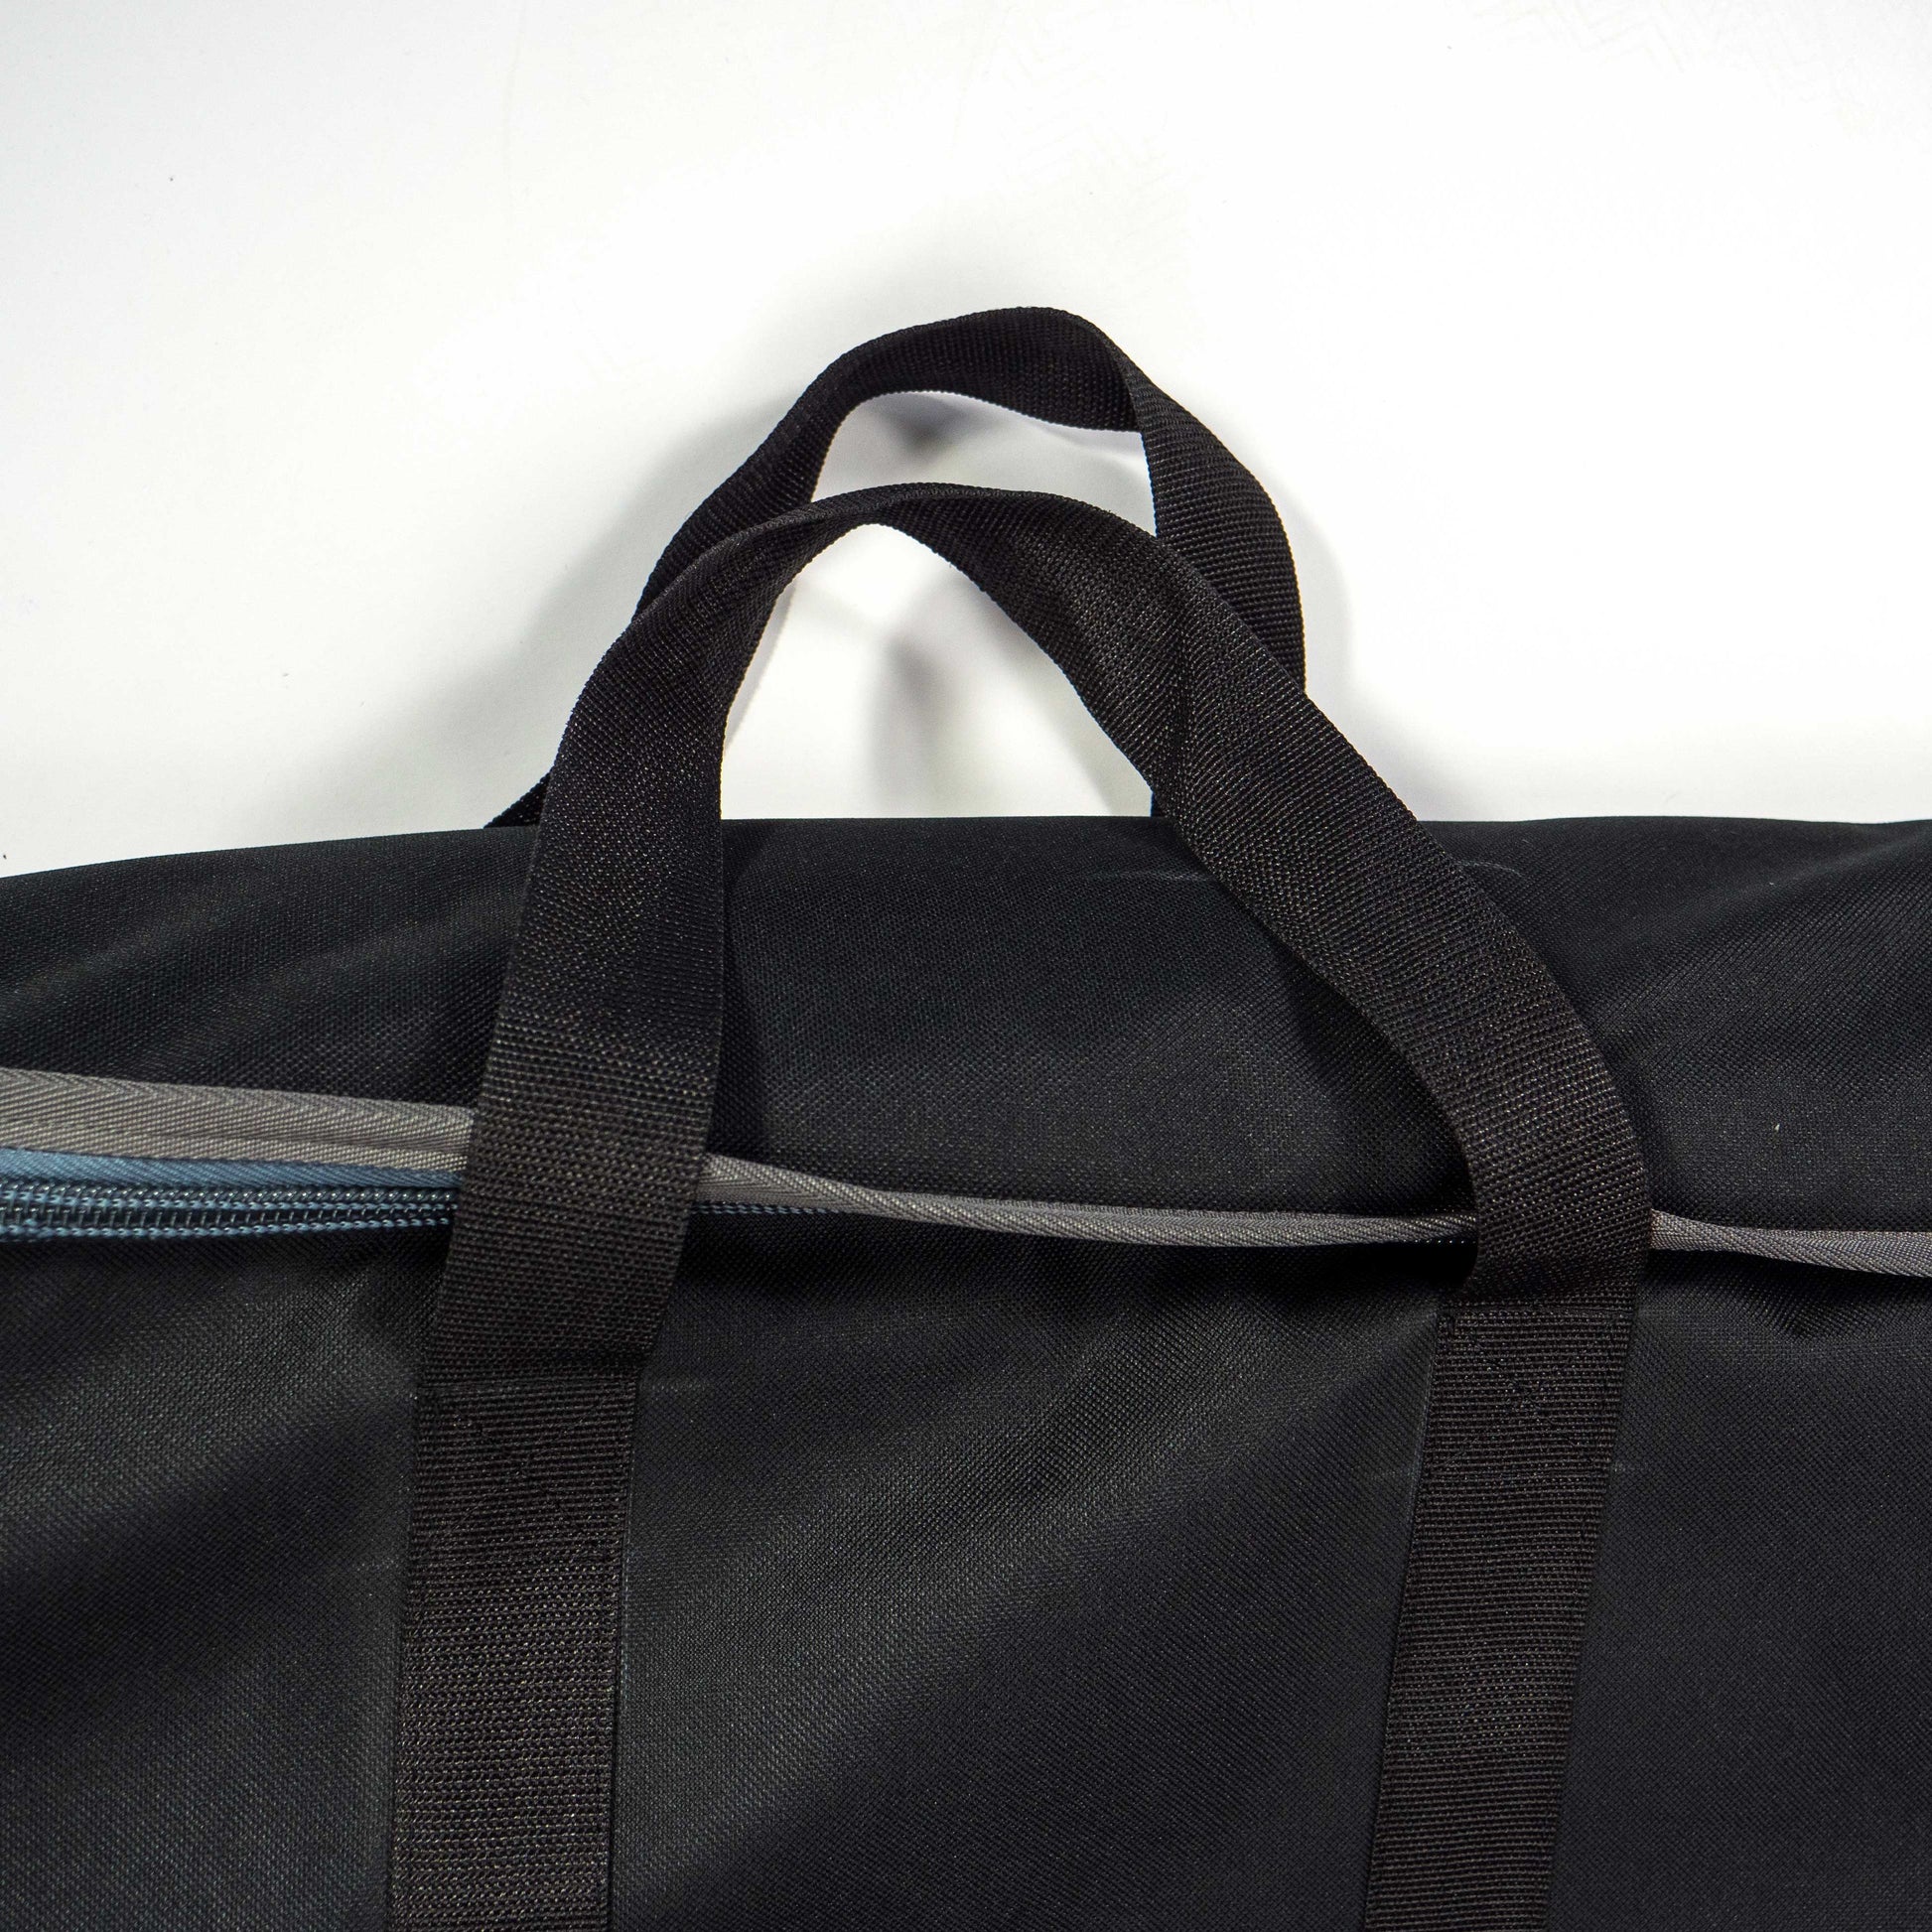 Duffel Bag Hand Protector handbag handle wraps luggage wrap 2x